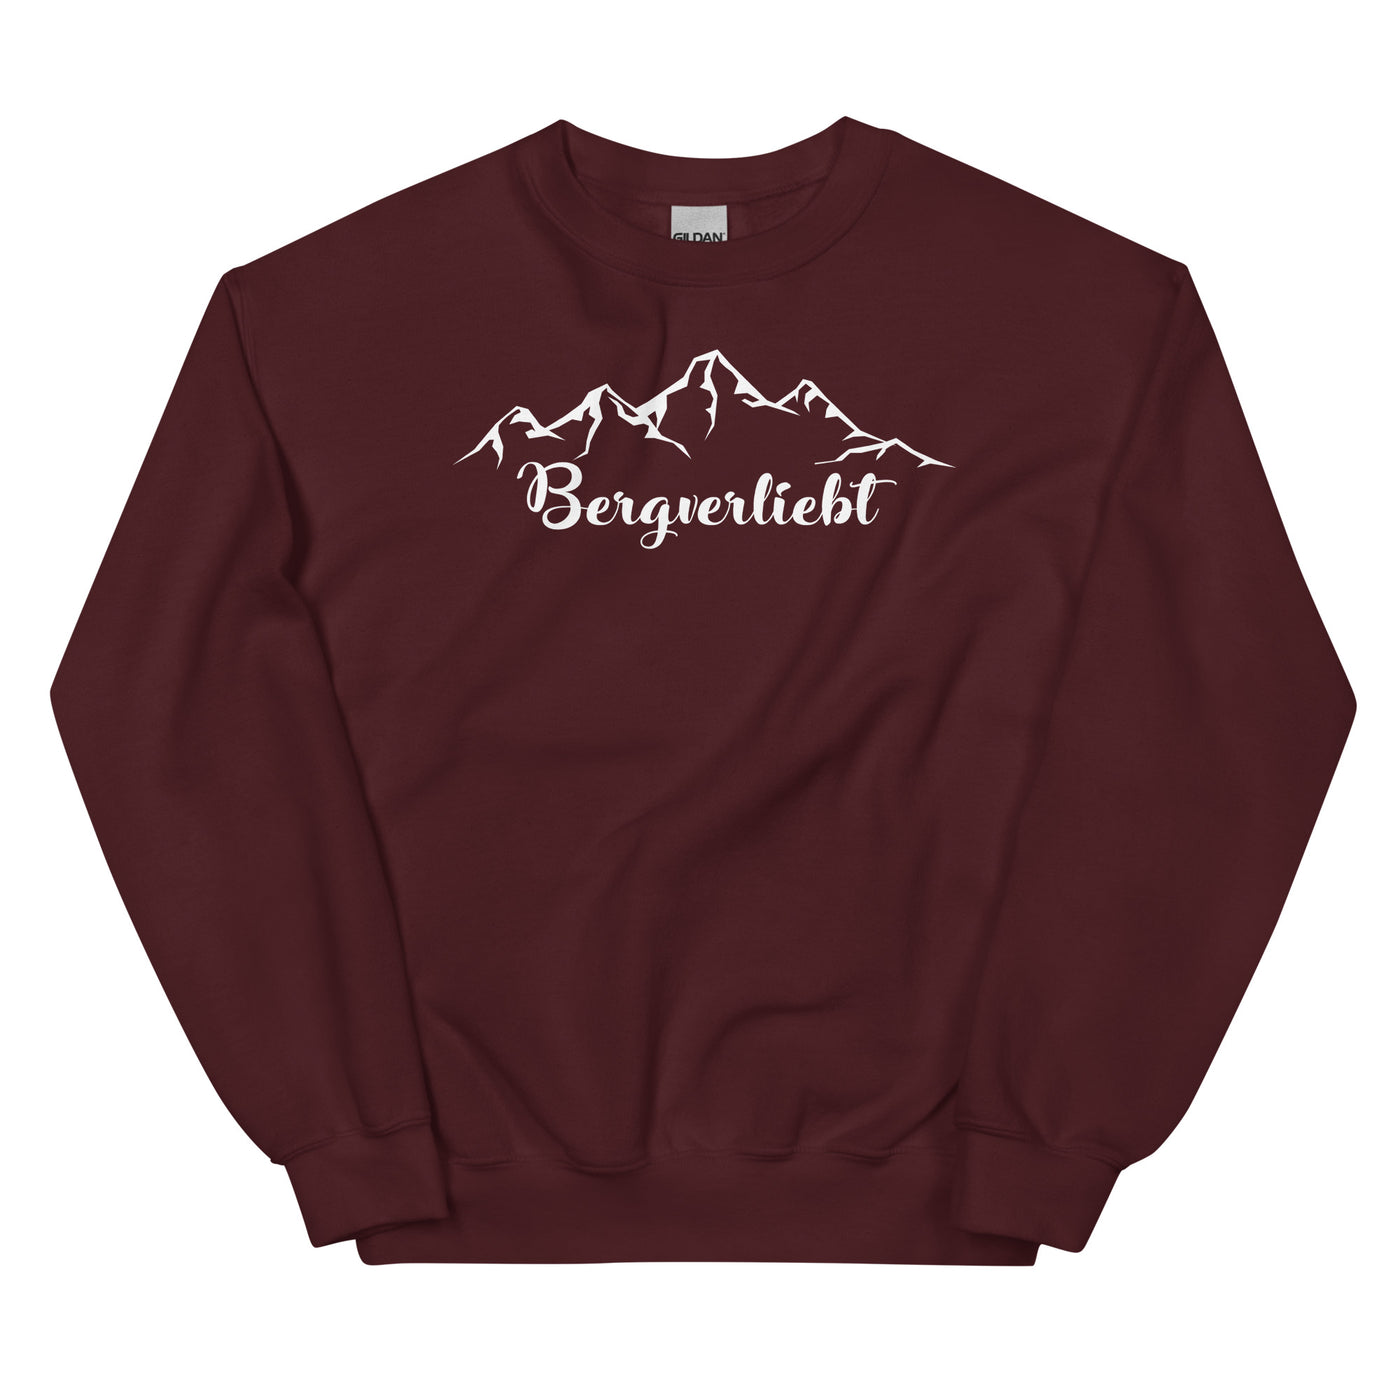 Bergverliebt (13) - Sweatshirt (Unisex) berge Maroon